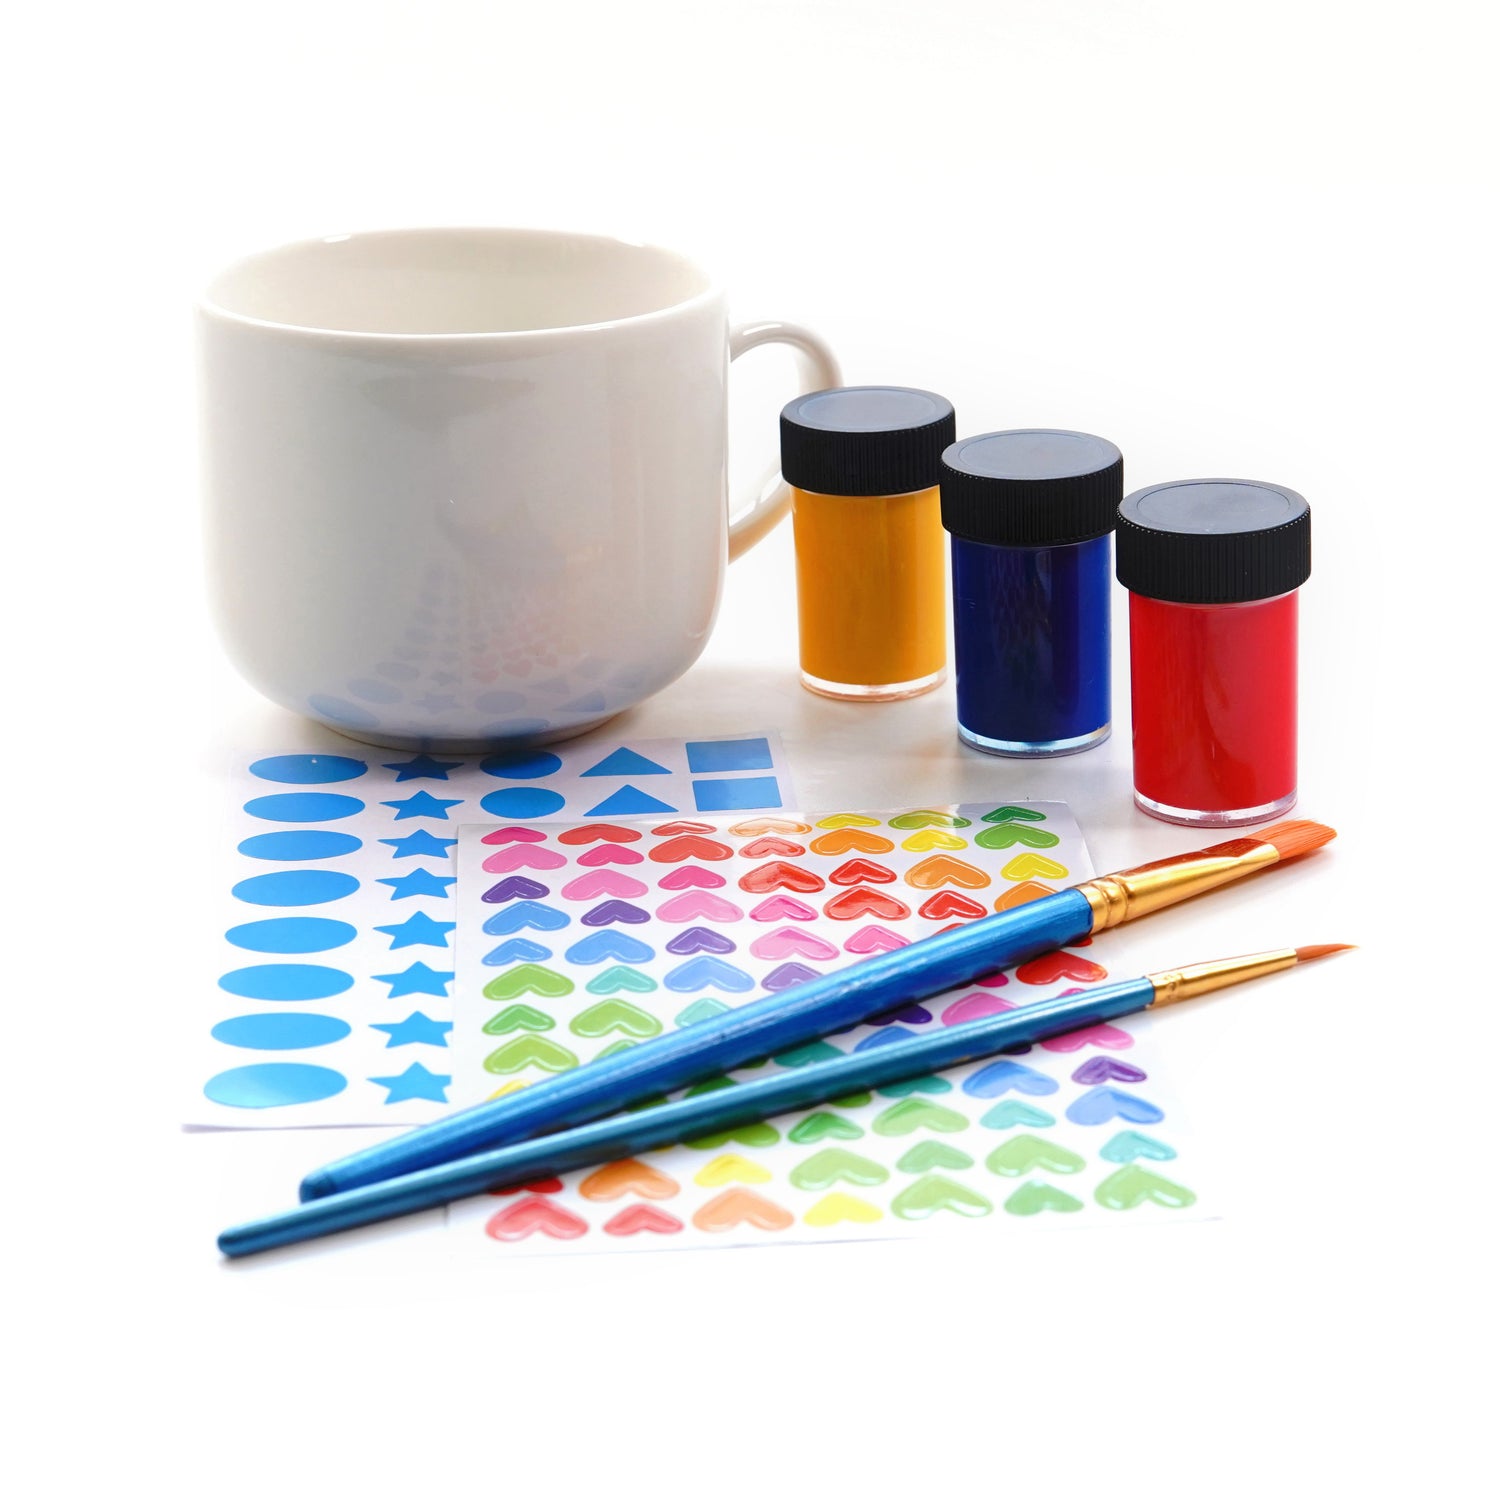 Les artisans décorent votre propre kit de tasse